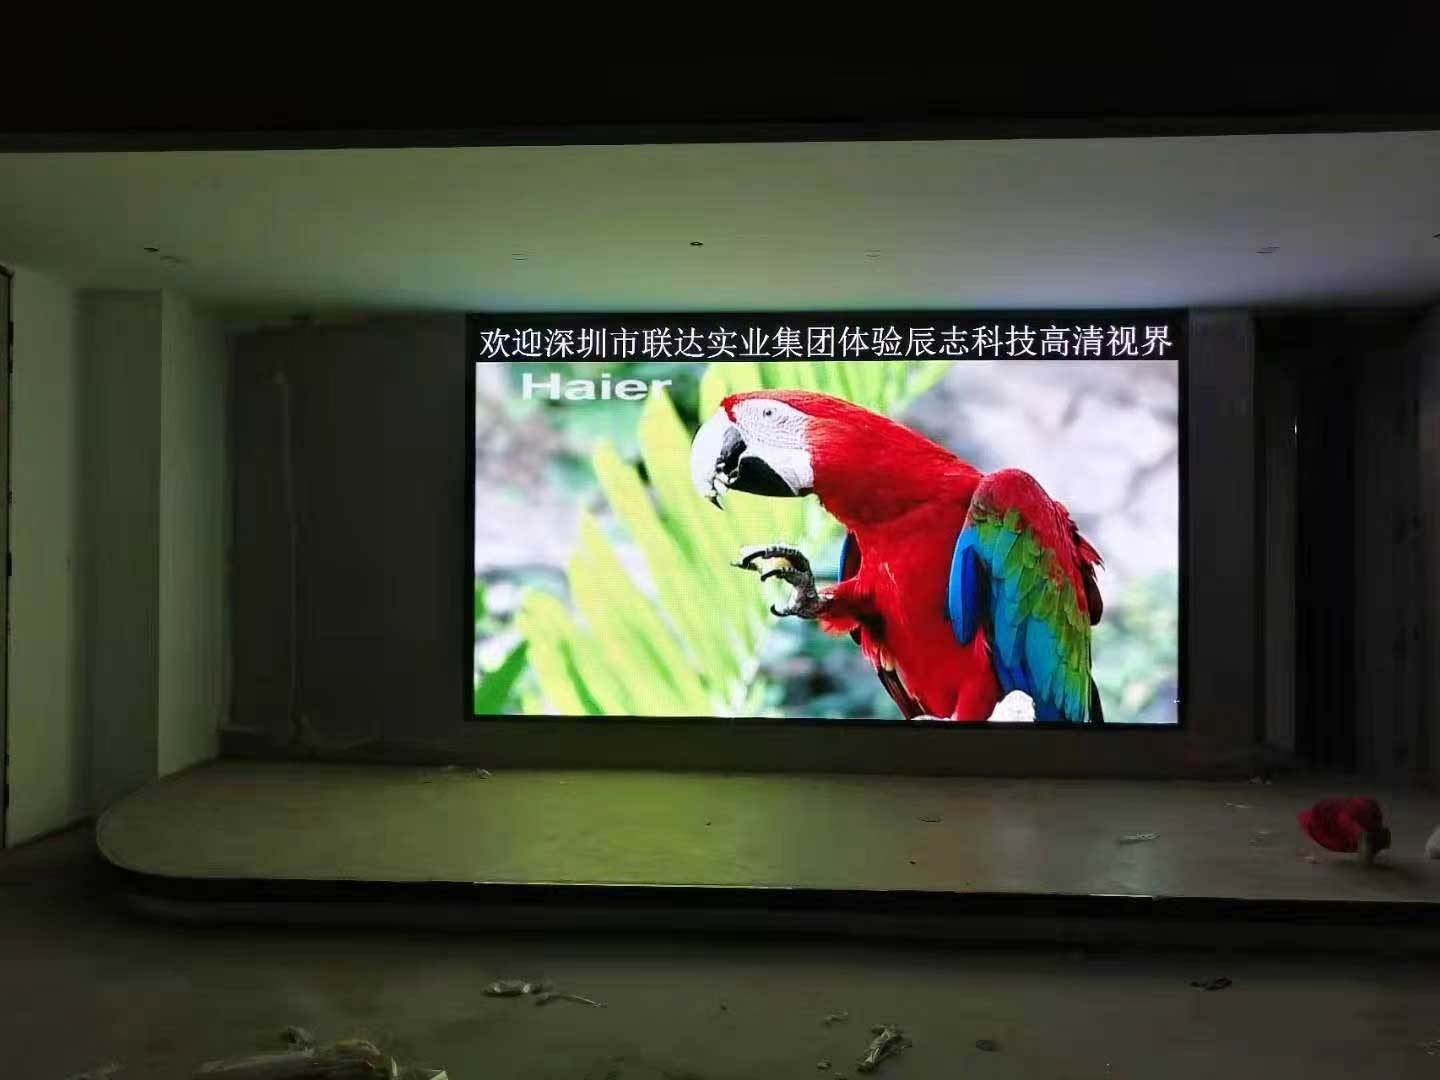 深圳联达实业技术有限公司会议培训室采用深圳市乐鱼体育有限公司室内高清P2.0全彩显示屏。